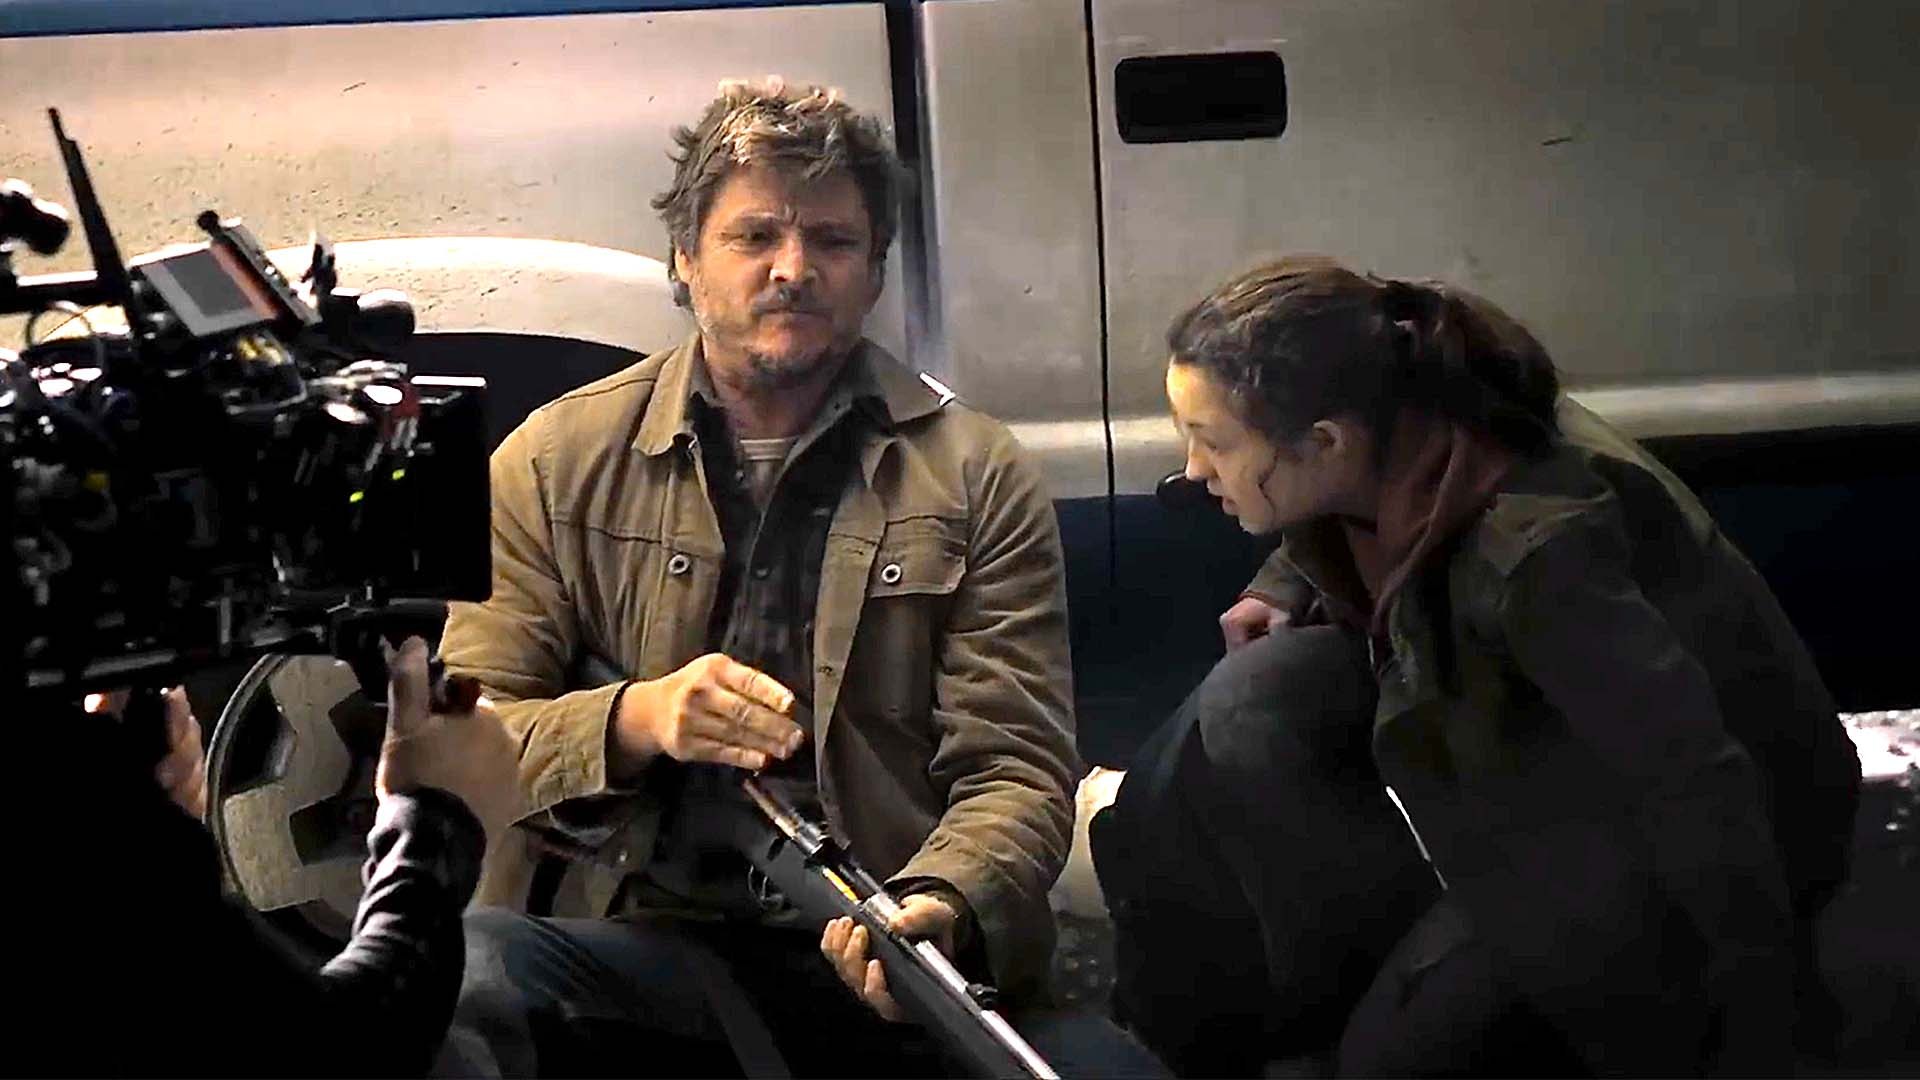 The Last of Us HBO Series Gets Behind-the-Scenes Look